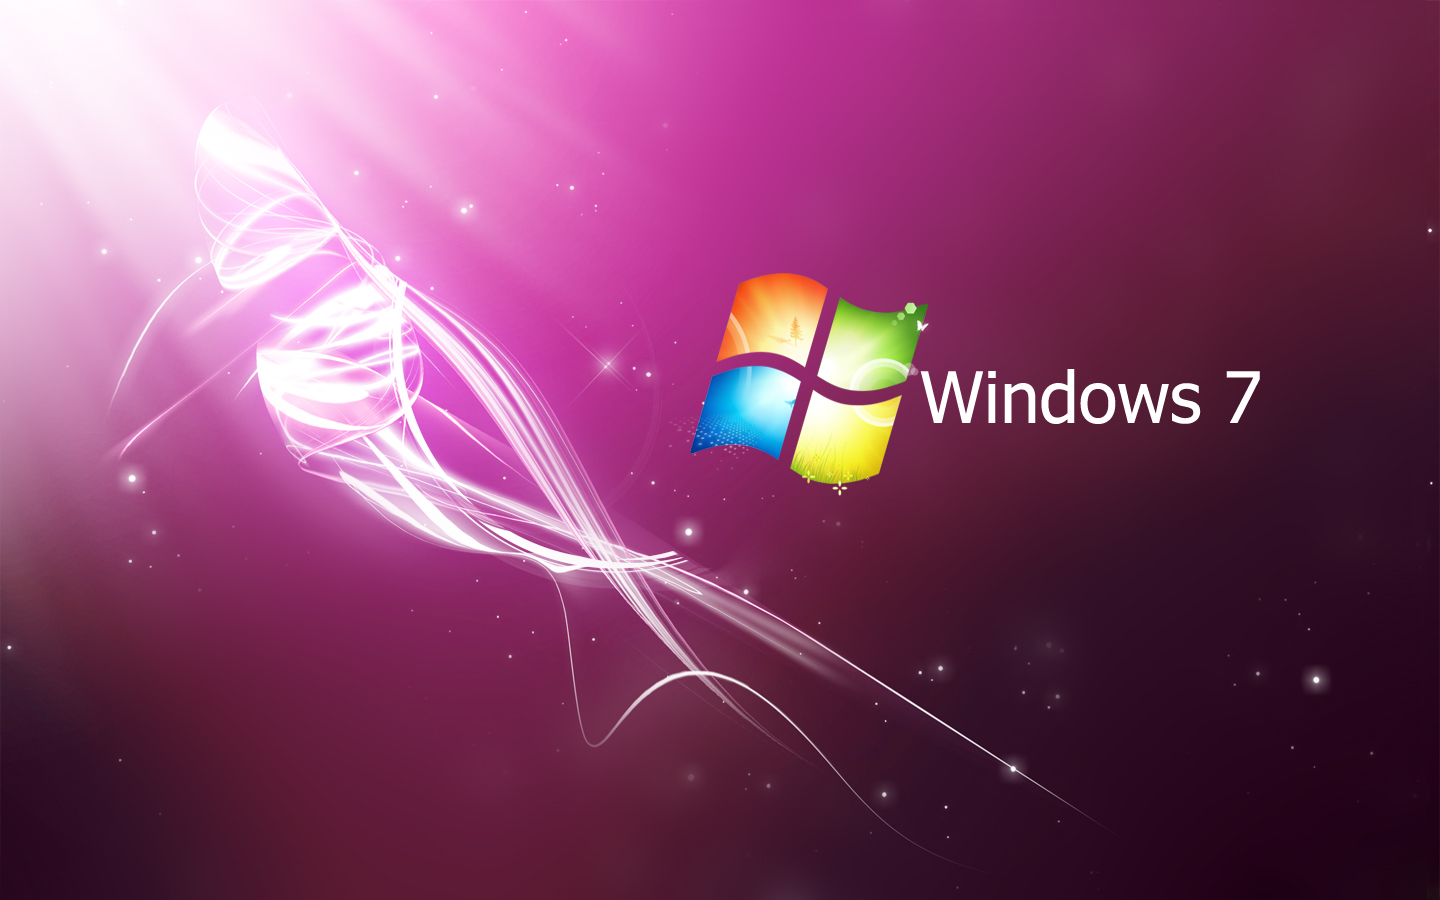 Bạn muốn tìm kiếm một bức ảnh nền Windows 7 với chất lượng hình ảnh tốt nhất? Hãy để cho hình nền màu hồng 3D TipTop trở thành lựa chọn của bạn! Với độ phân giải cao và các hình ảnh động nổi bật, bức ảnh nền này sẽ khiến cho màn hình desktop của bạn trở nên sinh động và độc đáo hơn.